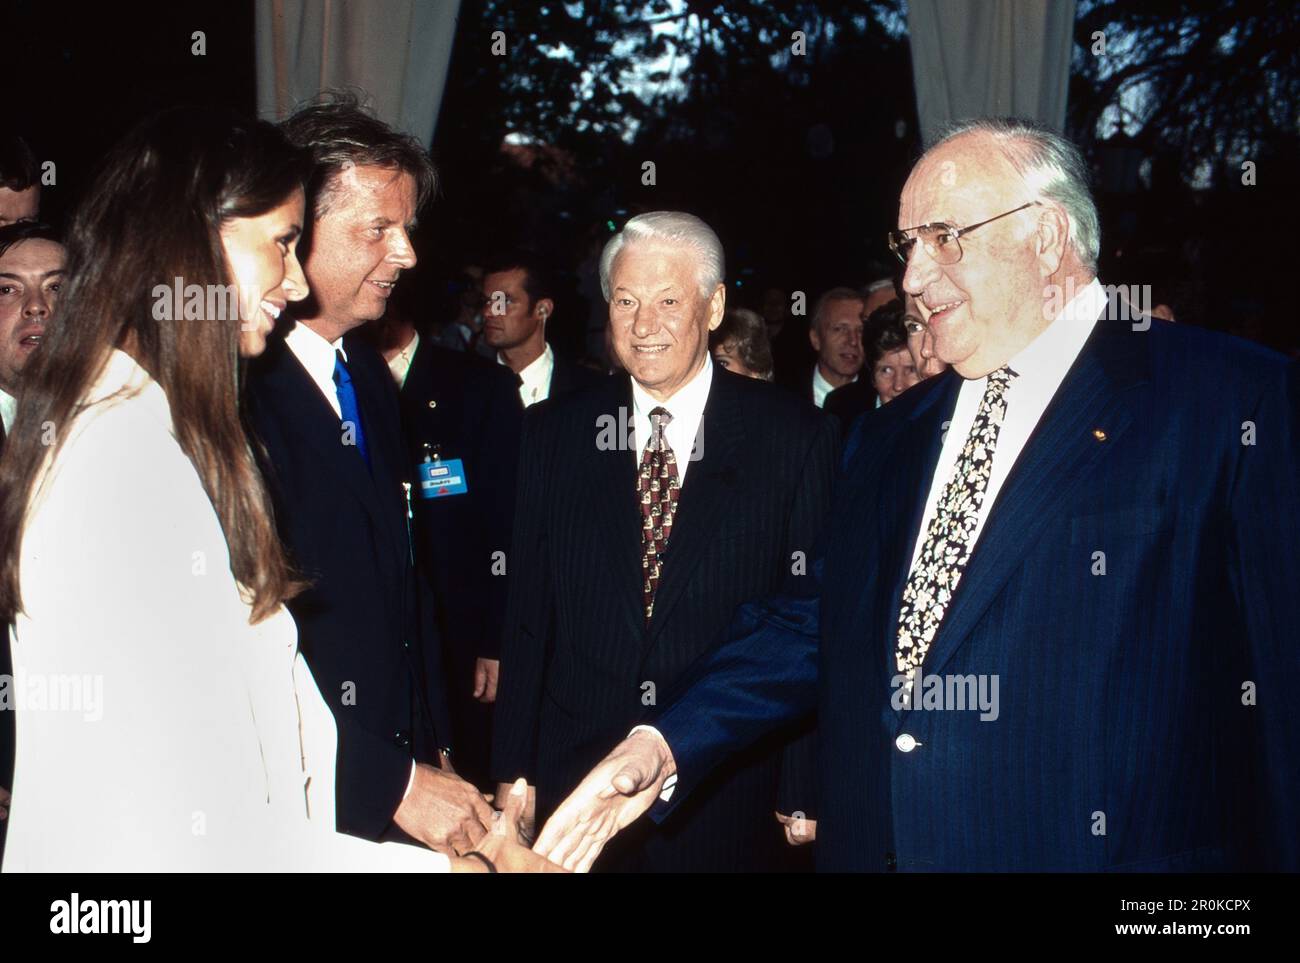 Bundeskanzler Helmut Kohl mit dem russischen Präsidenten Boris Jelzin begrüssen Medien- und Touristikunternehmer Karlheinz Kögel und Ehefrau Nadja, Deutschland 1991. Stock Photo